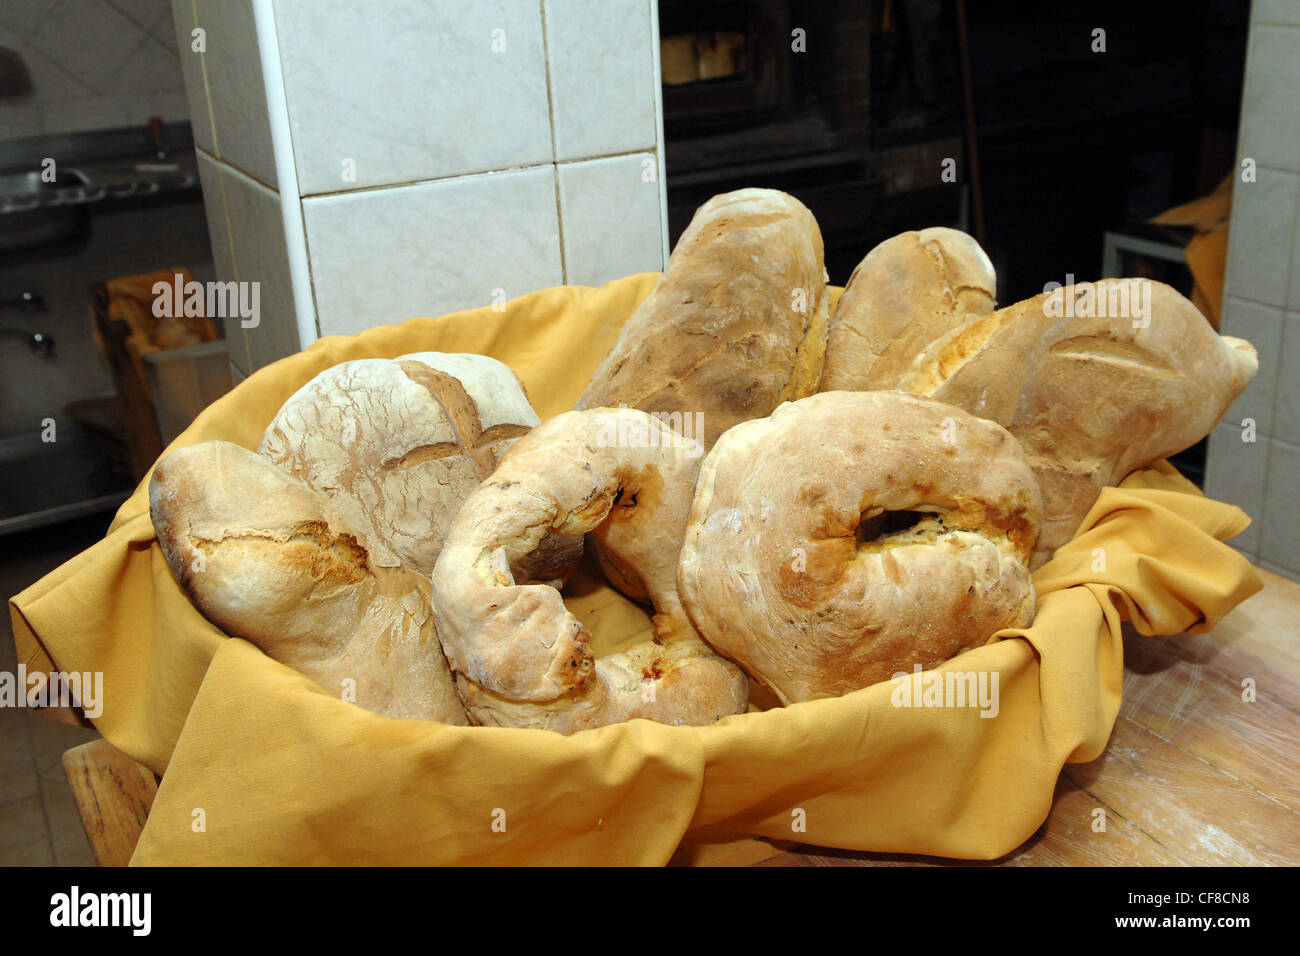 Du pain artisanal pain italien pain panier produit typique de mélange de farine Rapone village au sud de l'Italie Région Basilicate Italie Eu Banque D'Images